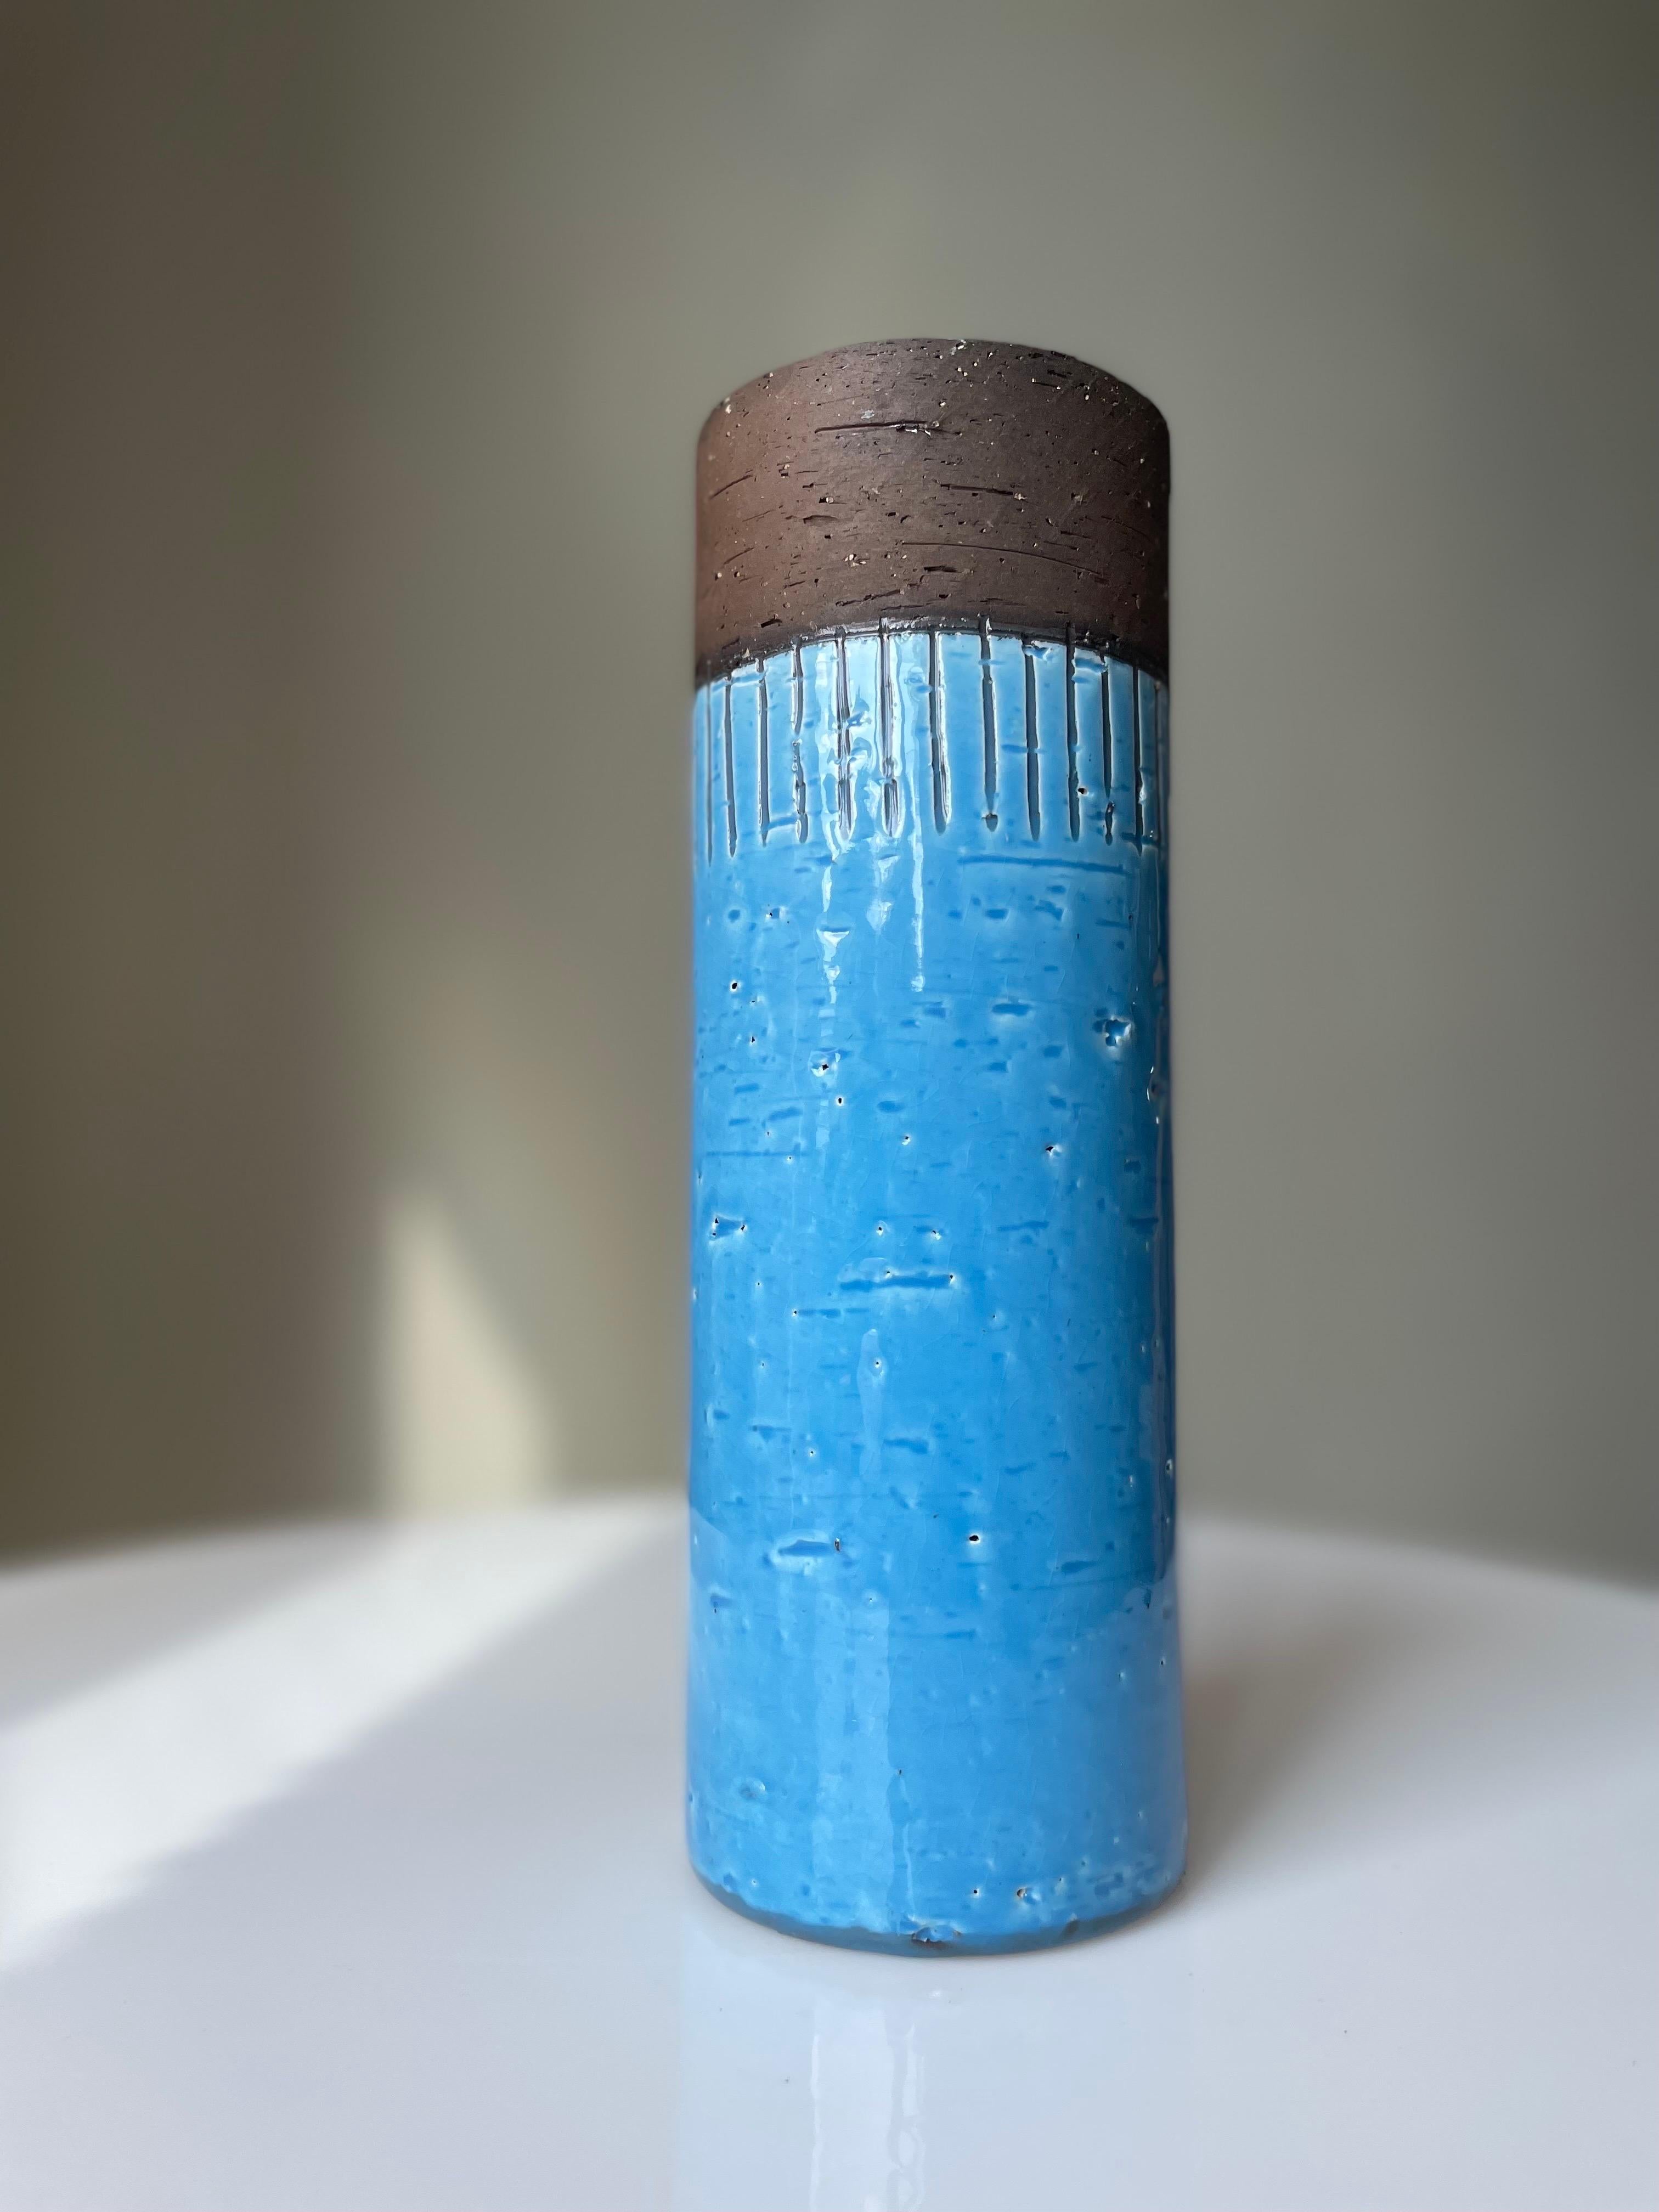 Grand vase en céramique suédoise moderne du milieu du siècle, de forme cylindrique, fait à la main, avec une glaçure bleue brillante à l'extérieur et une glaçure claire à l'intérieur. La partie supérieure non émaillée et la partie droite en bas sont